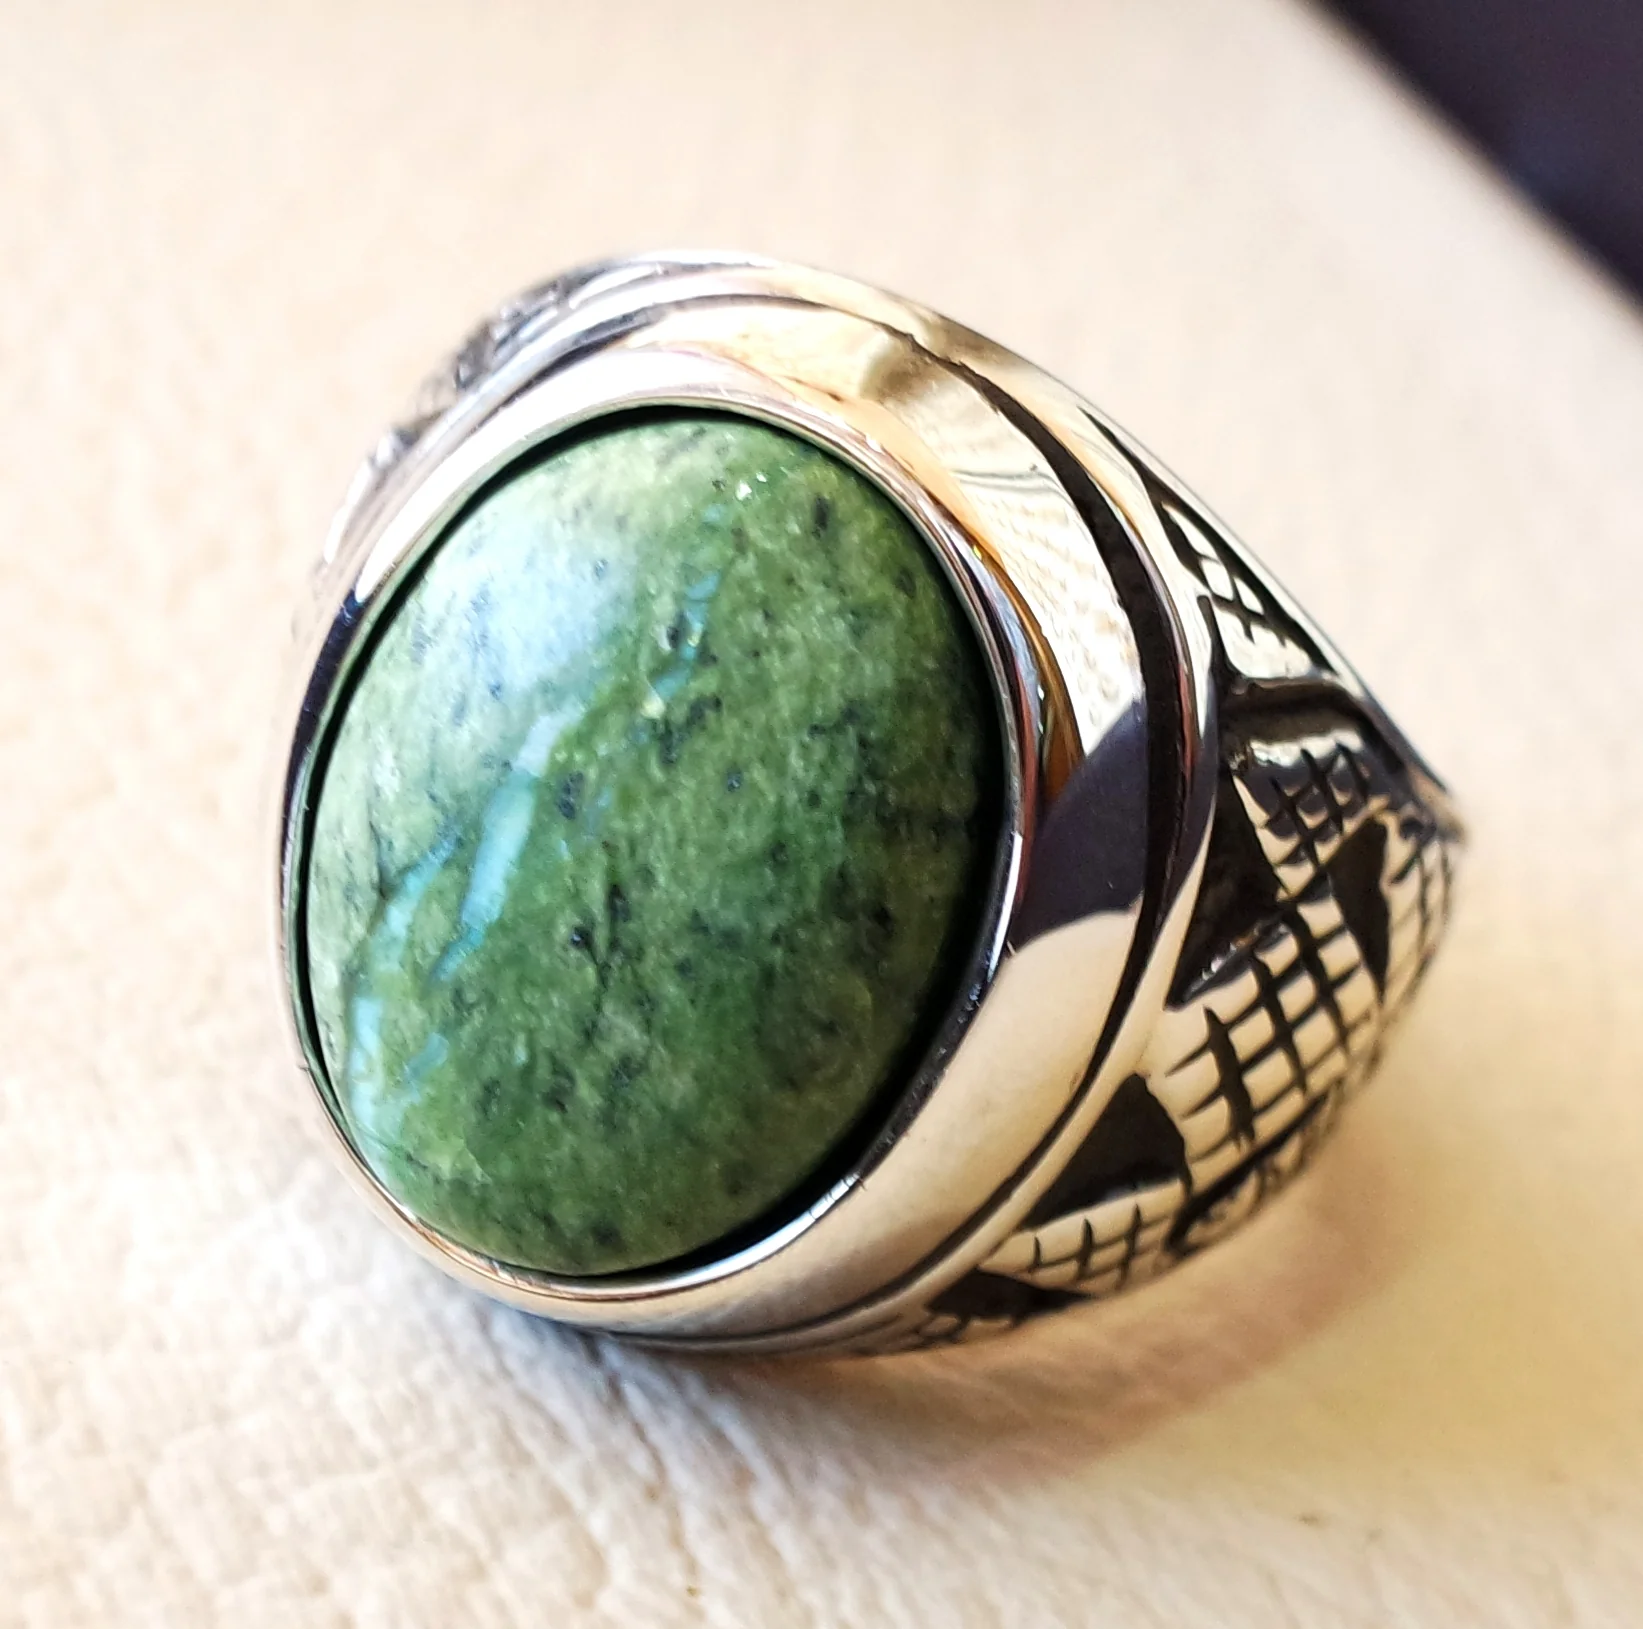 Green Swiss Opal Naturstein Herrenring Sterling Silber 925 atemberaubende echte gem Ottoman arabische Stil Schmuck alle Größen